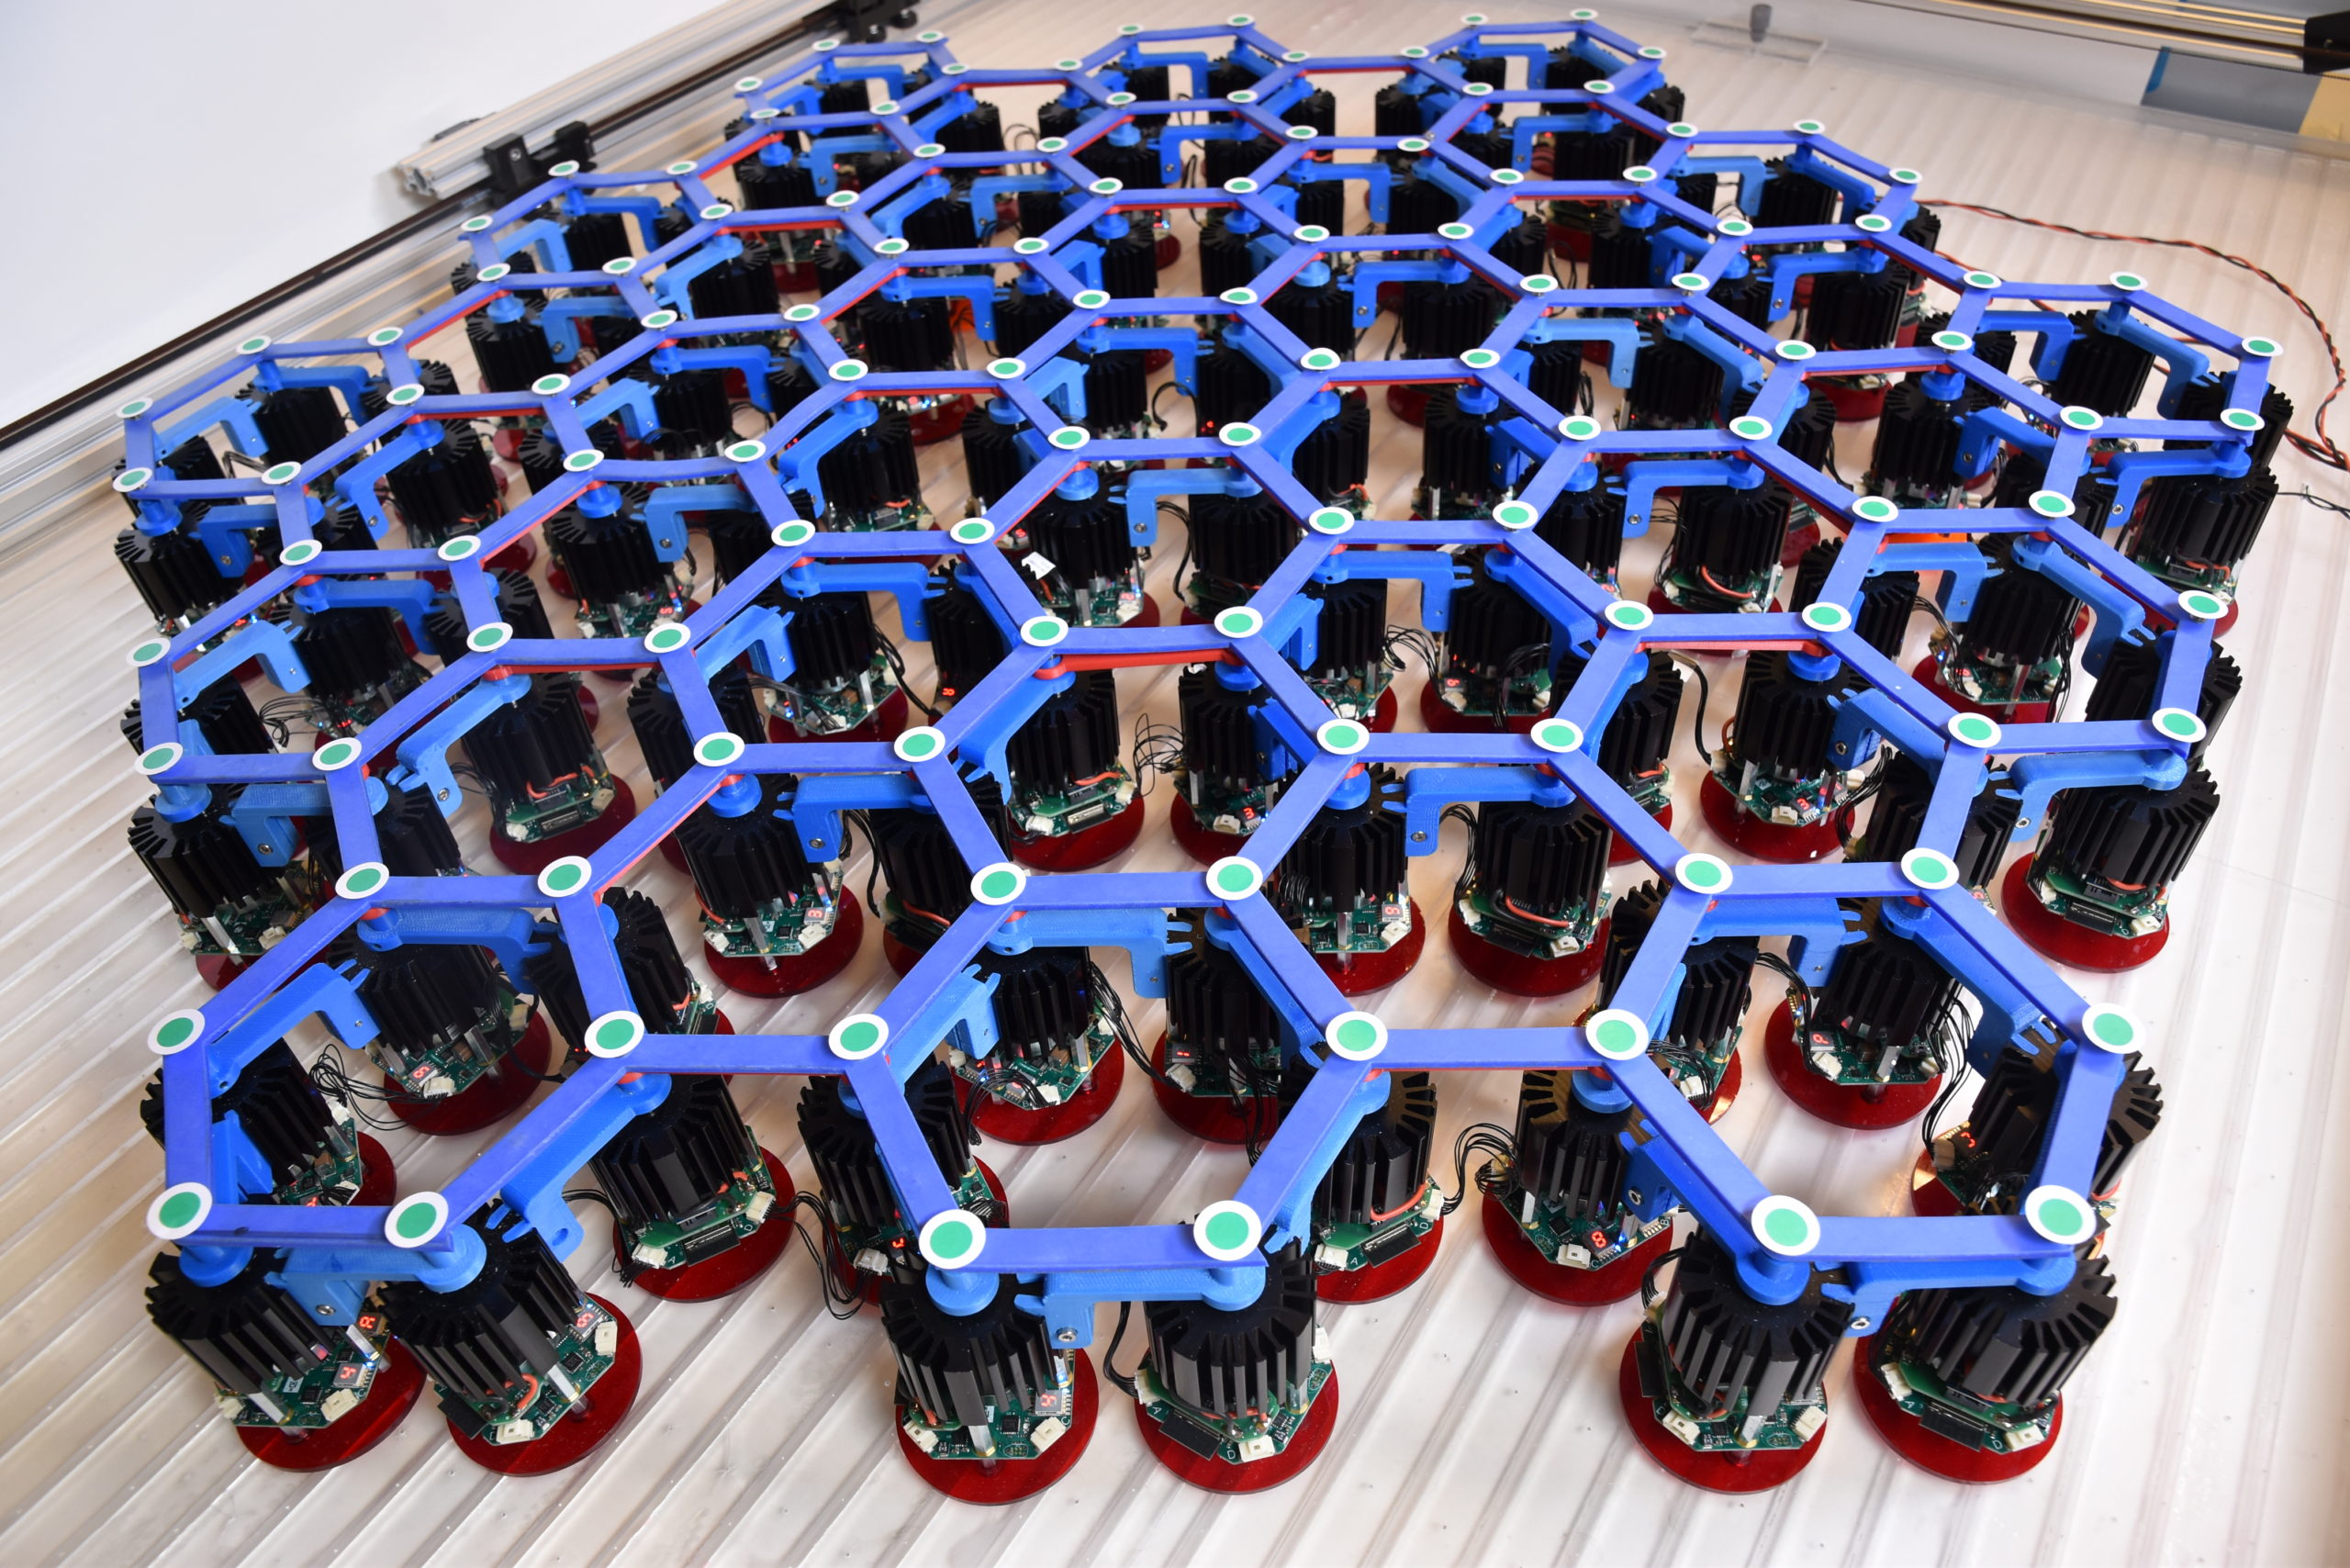 Hexagonally arranged active robots exhibit odd dynamics.